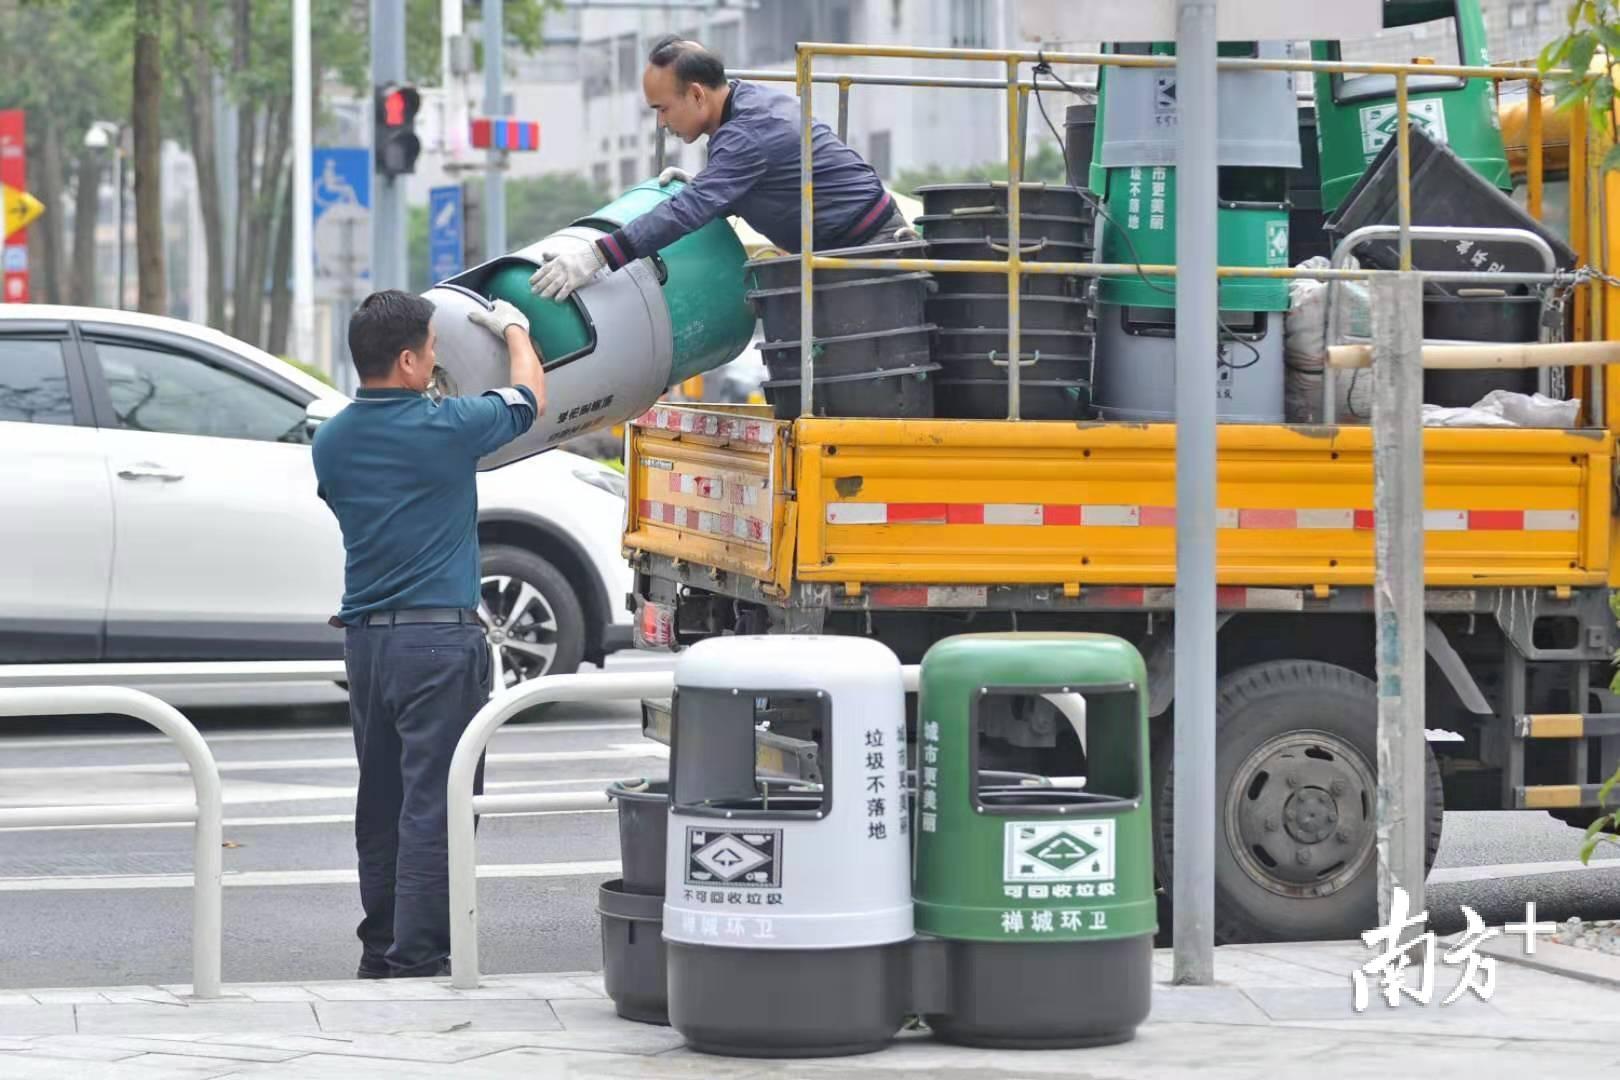 禅城区平均每天产生生活垃圾1300多吨，人均每日产生1公斤多生活垃圾。戴嘉信 摄